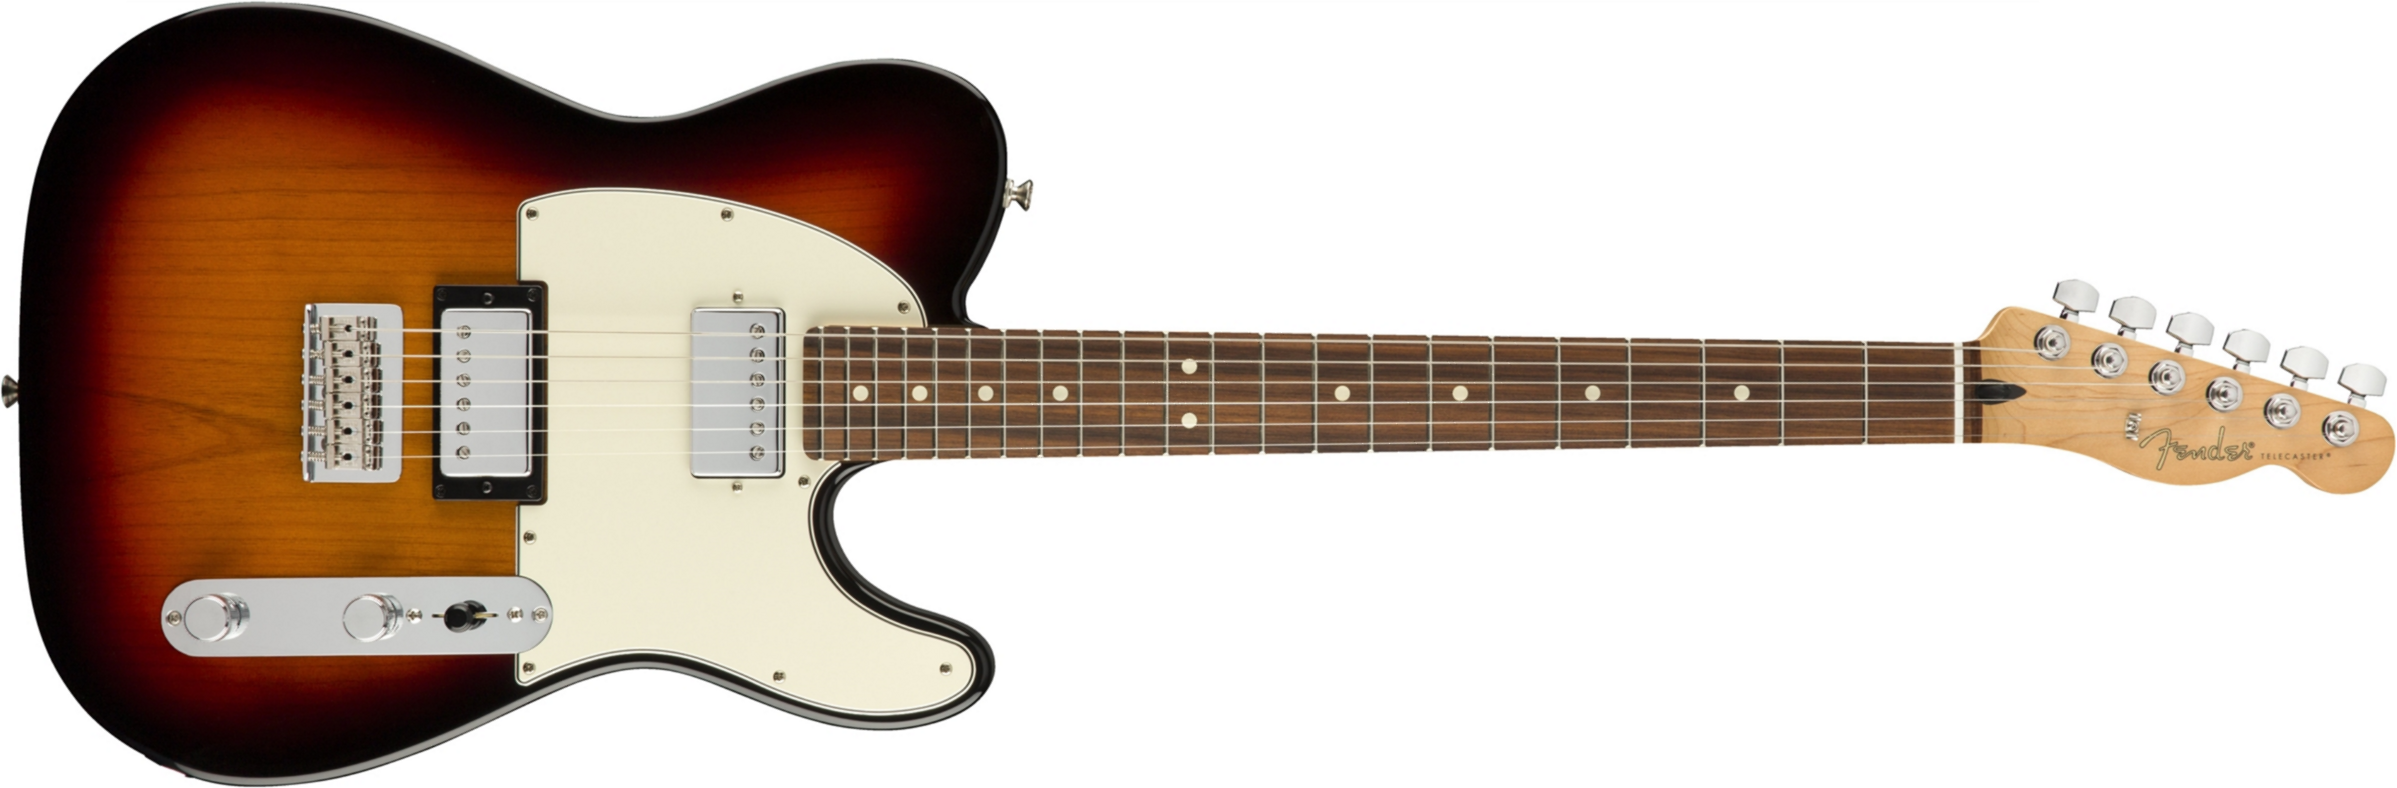 Fender Tele Player Mex Hh Pf - 3-color Sunburst - E-Gitarre in Teleform - Main picture